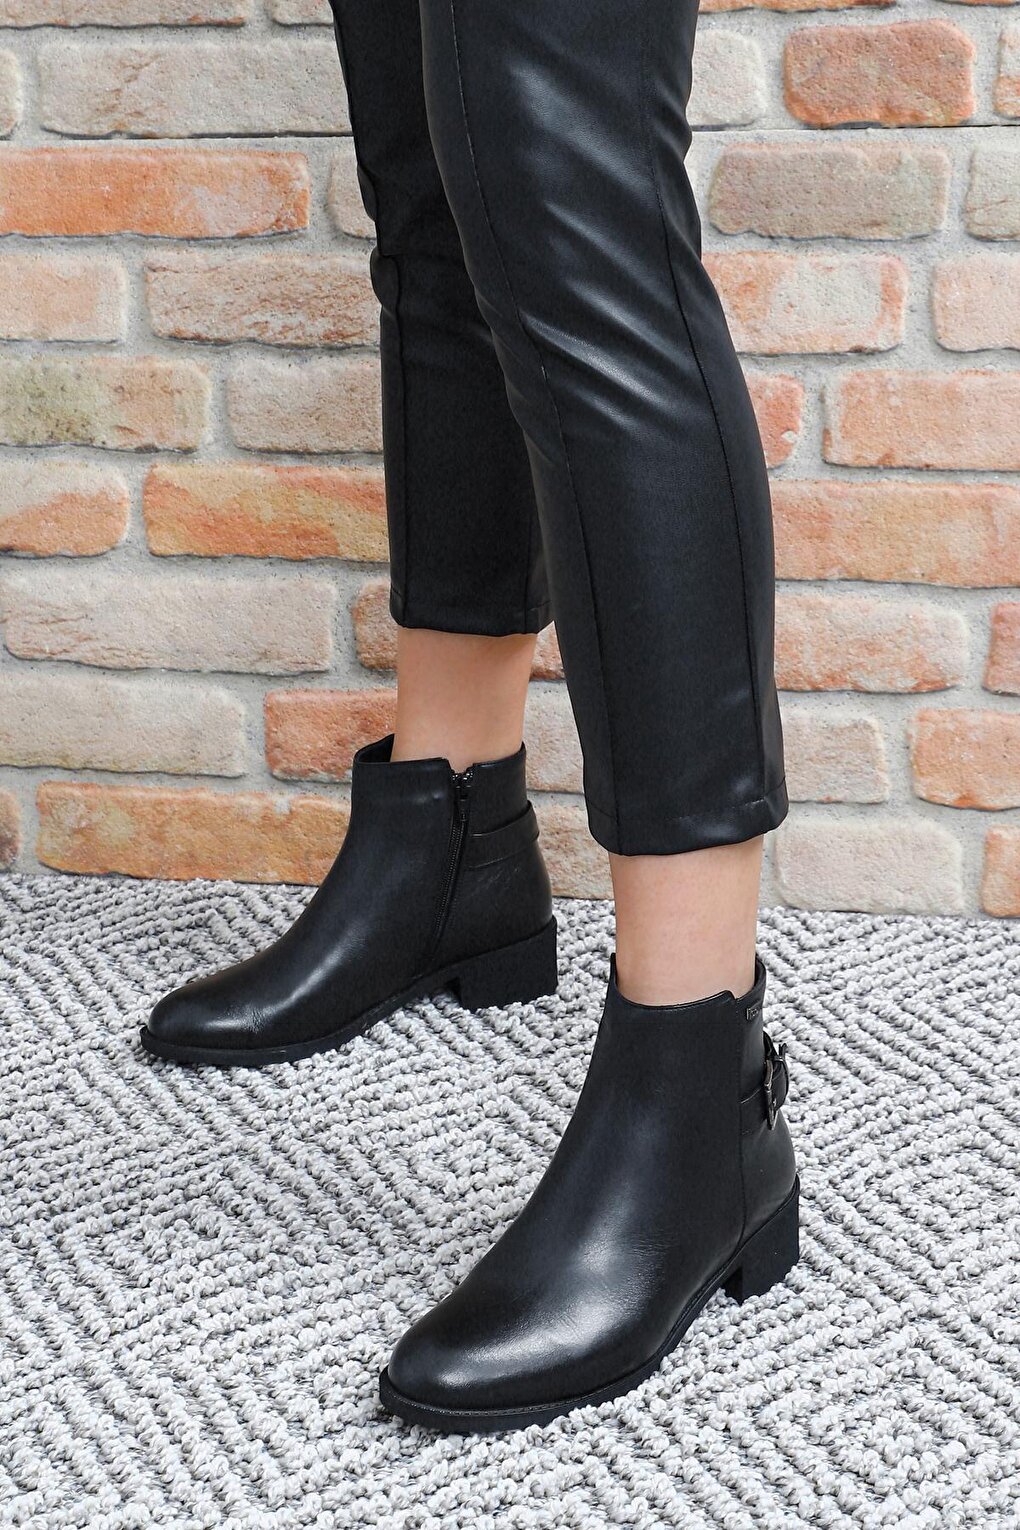 Женские повседневные ботинки из натуральной кожи с круглым носком, резиновой подошвой, каблуком, застежкой-молнией и пряжкой, 50415 GÖNDERİ(R), черный